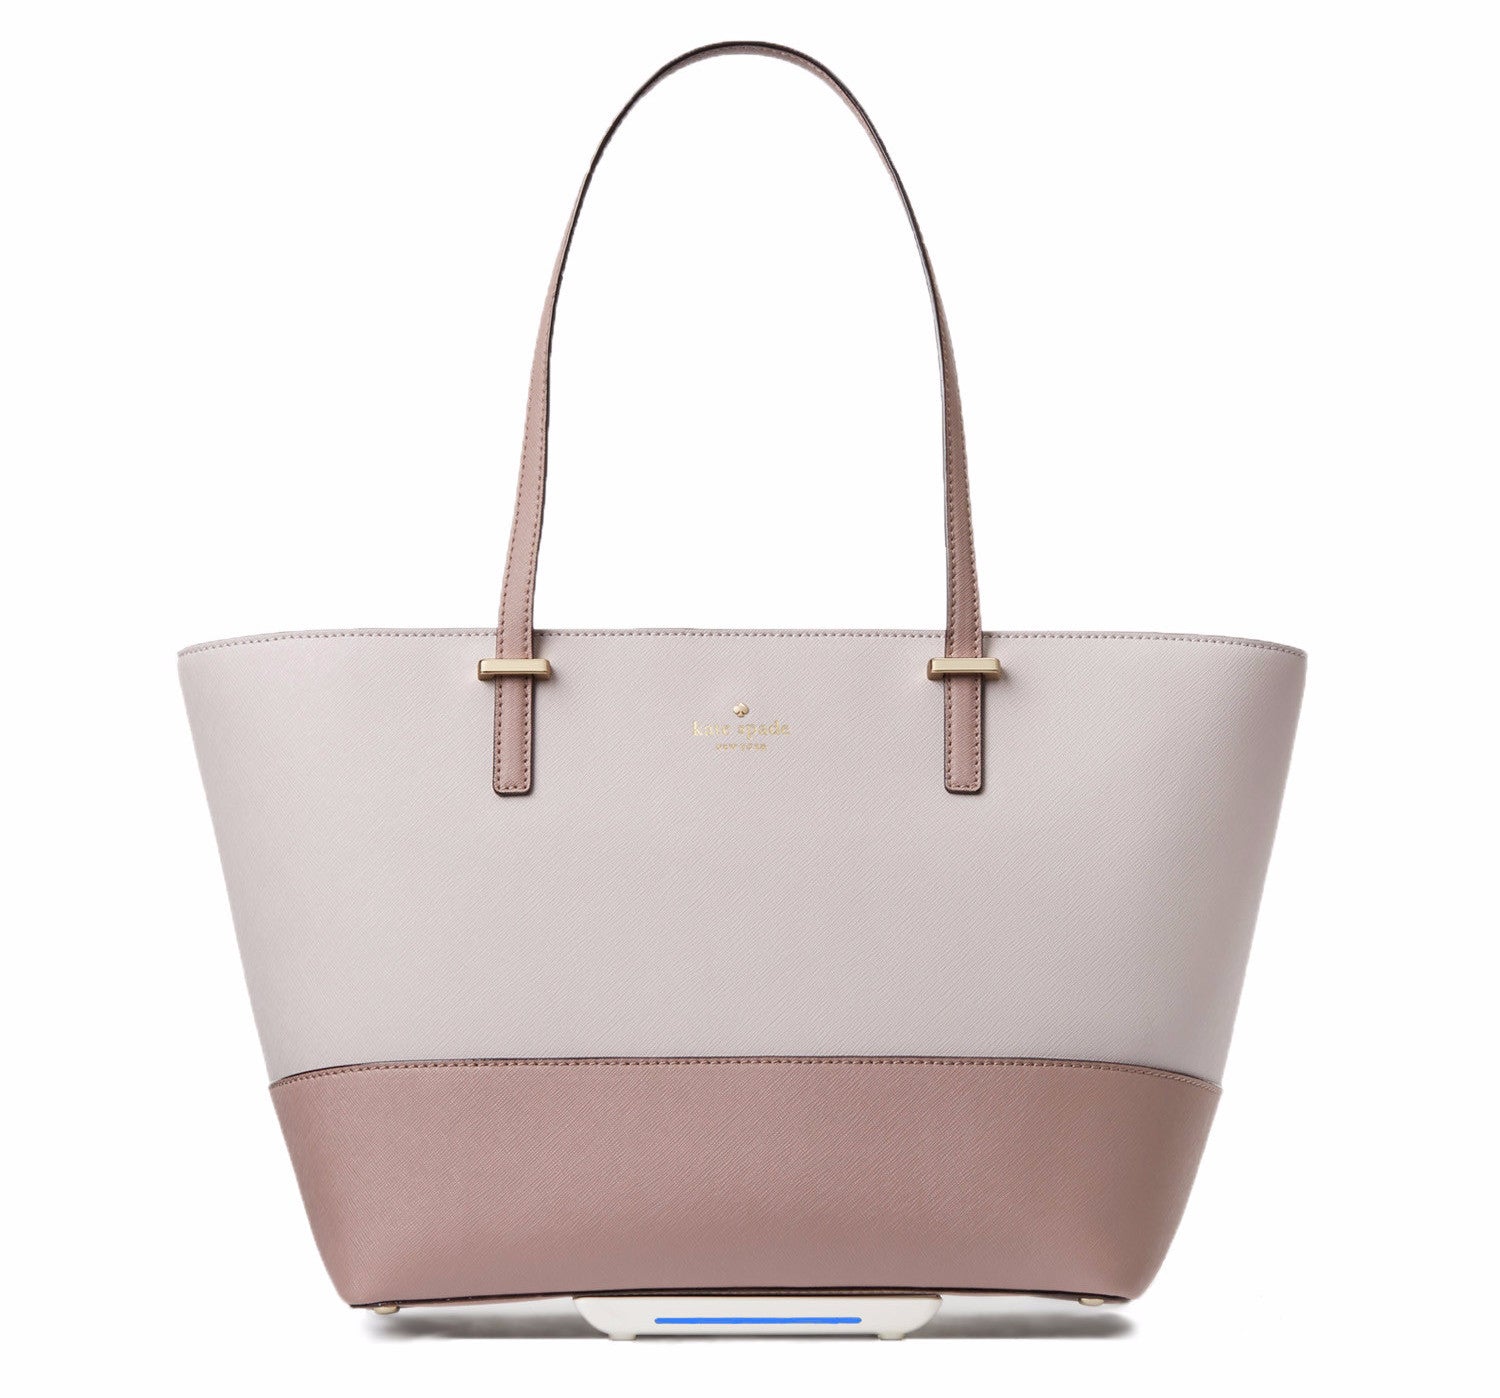 Women's Pink Handbags Under $100 | Nordstrom Rack